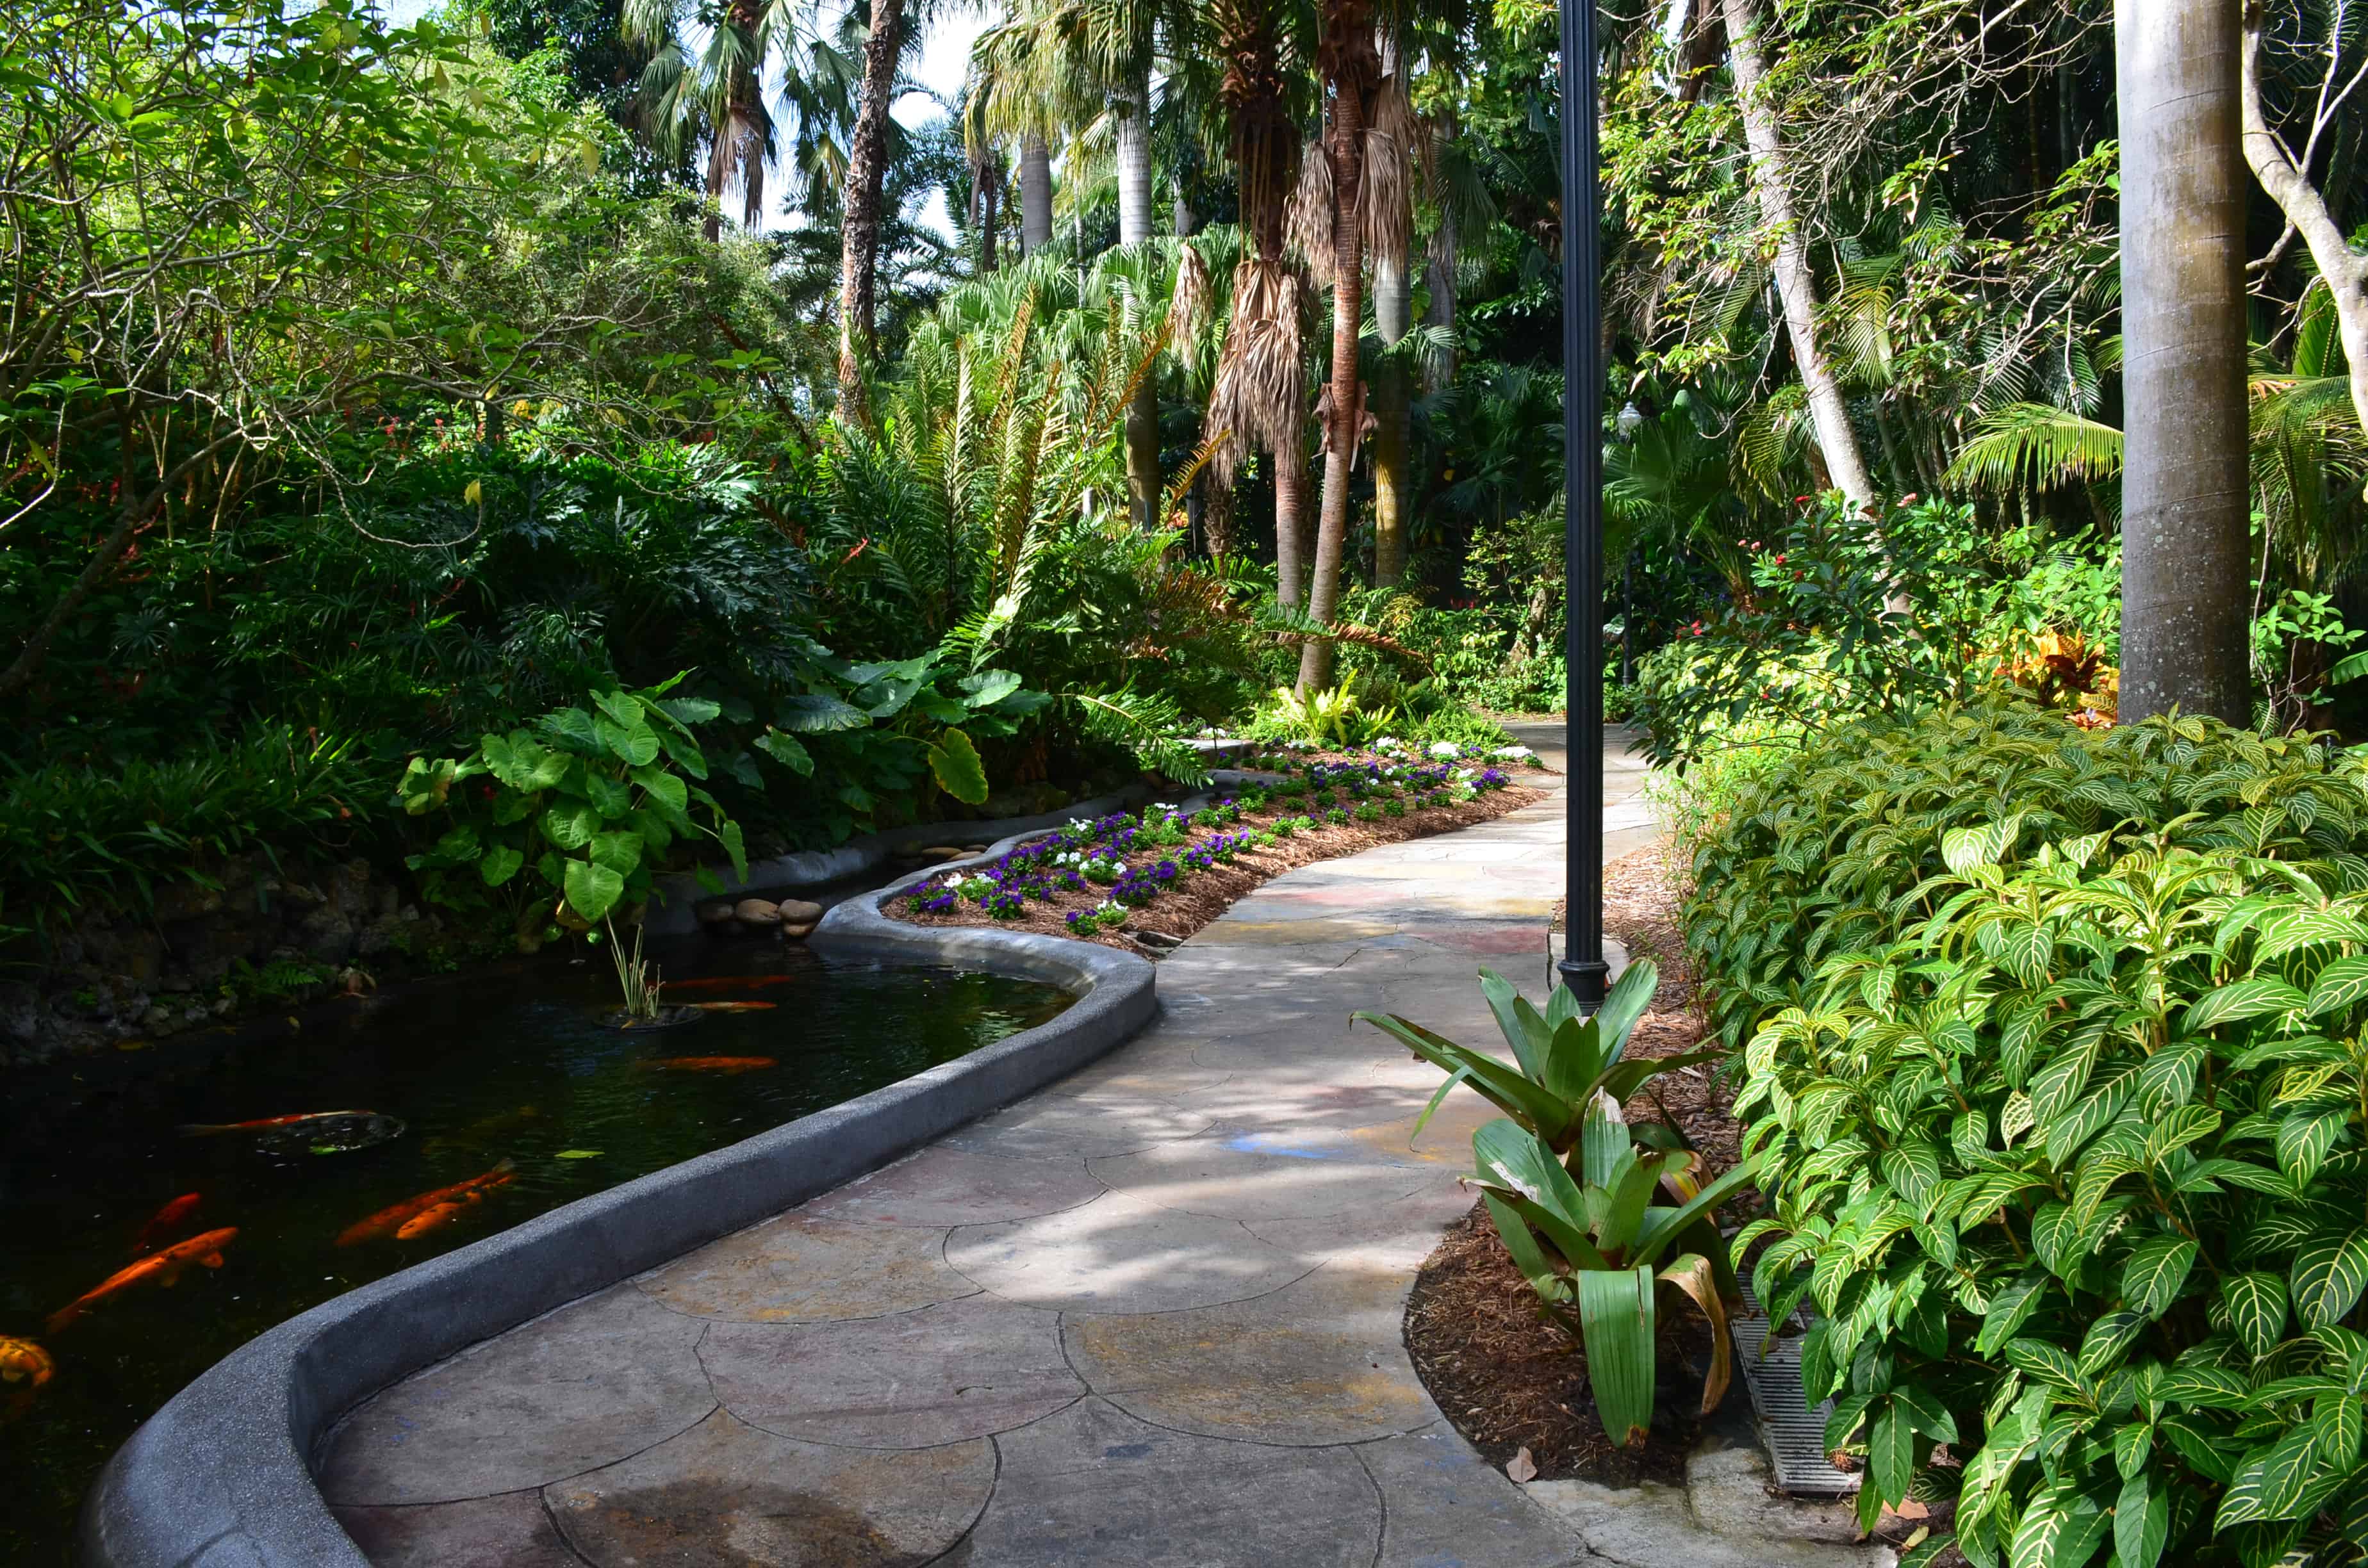 A path through the Sunken Gardens in St. Petersburg, Florida